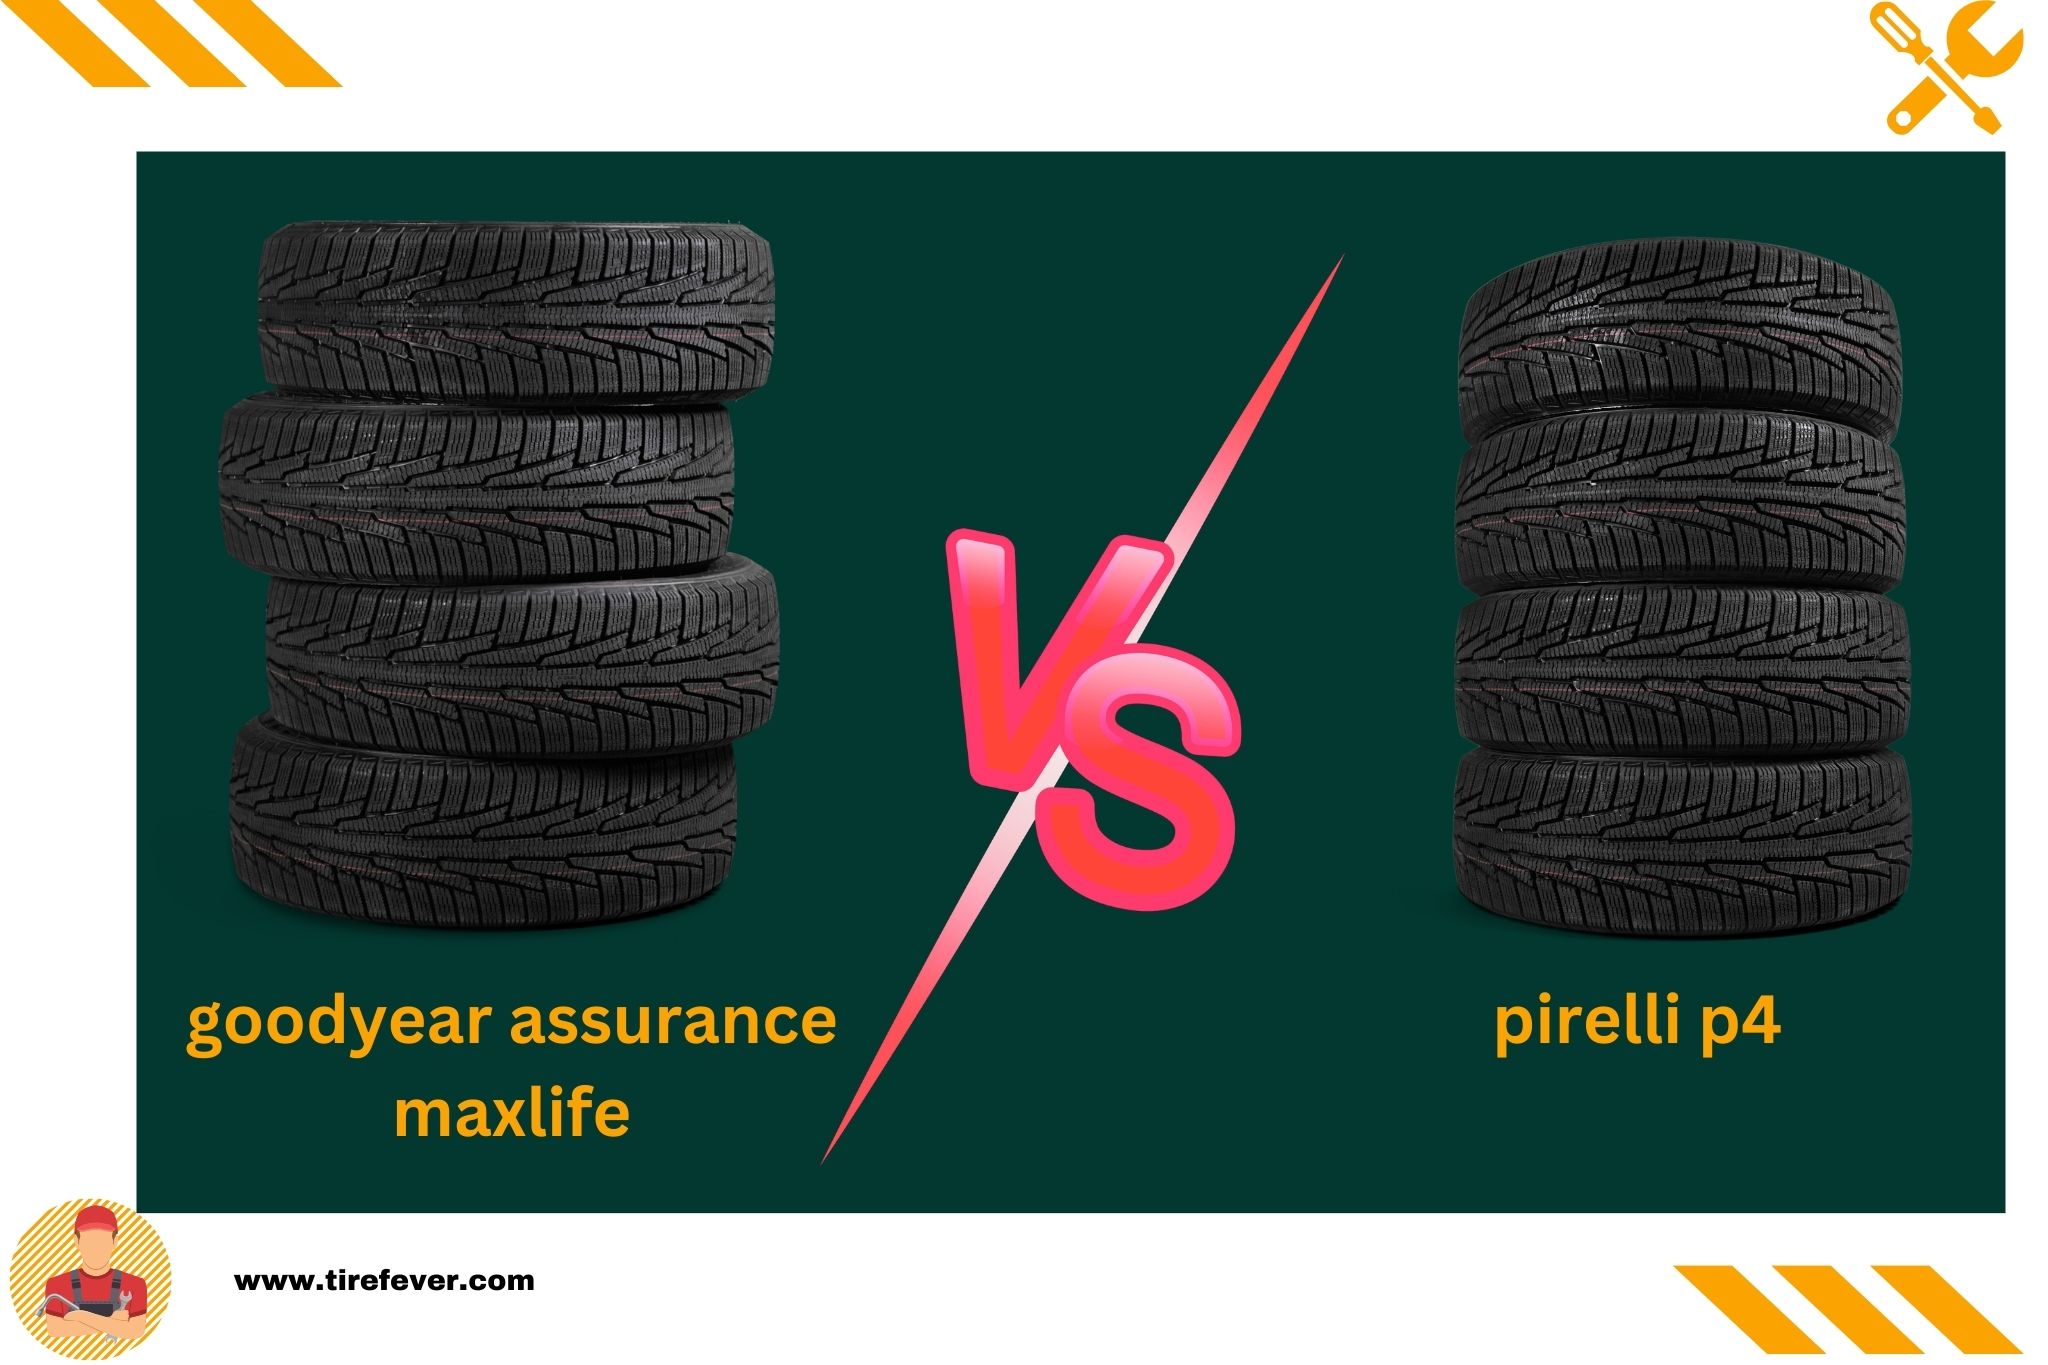 goodyear assurance maxlife vs pirelli p4